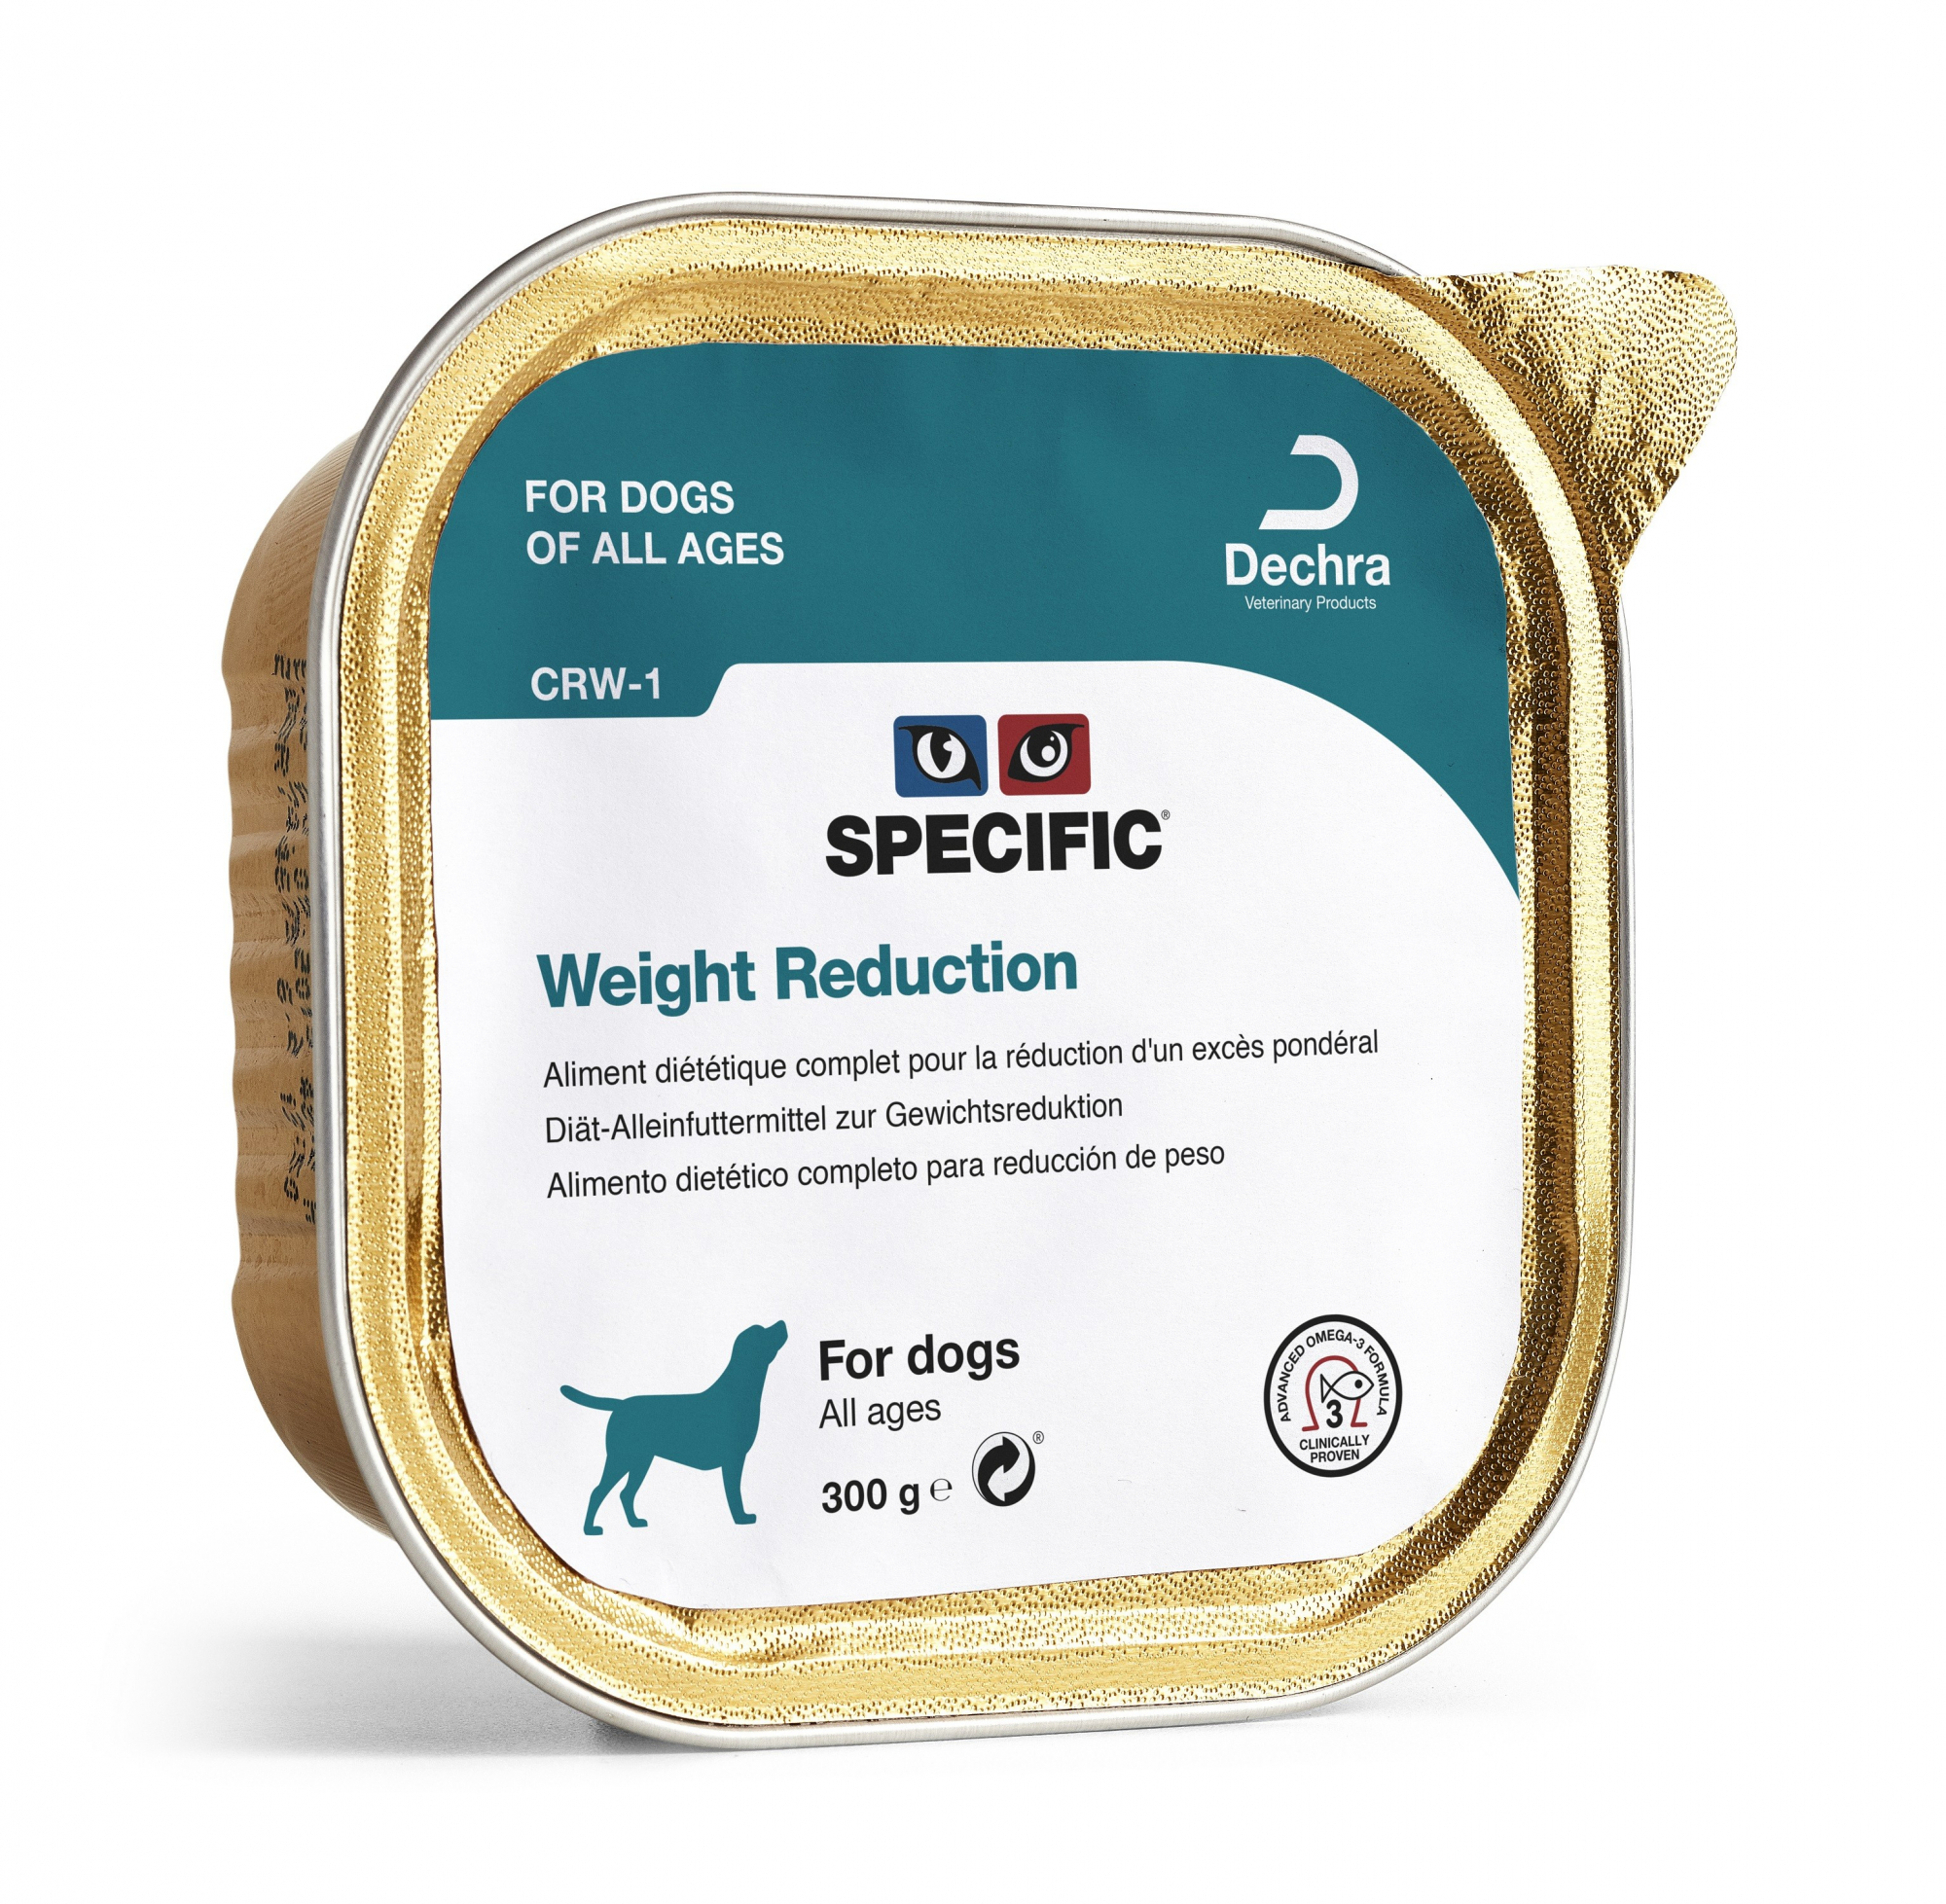 Pack de 6 Patés SPECIFIC CRW-1 Weight Reduction 300g para cães adultos com excesso de peso